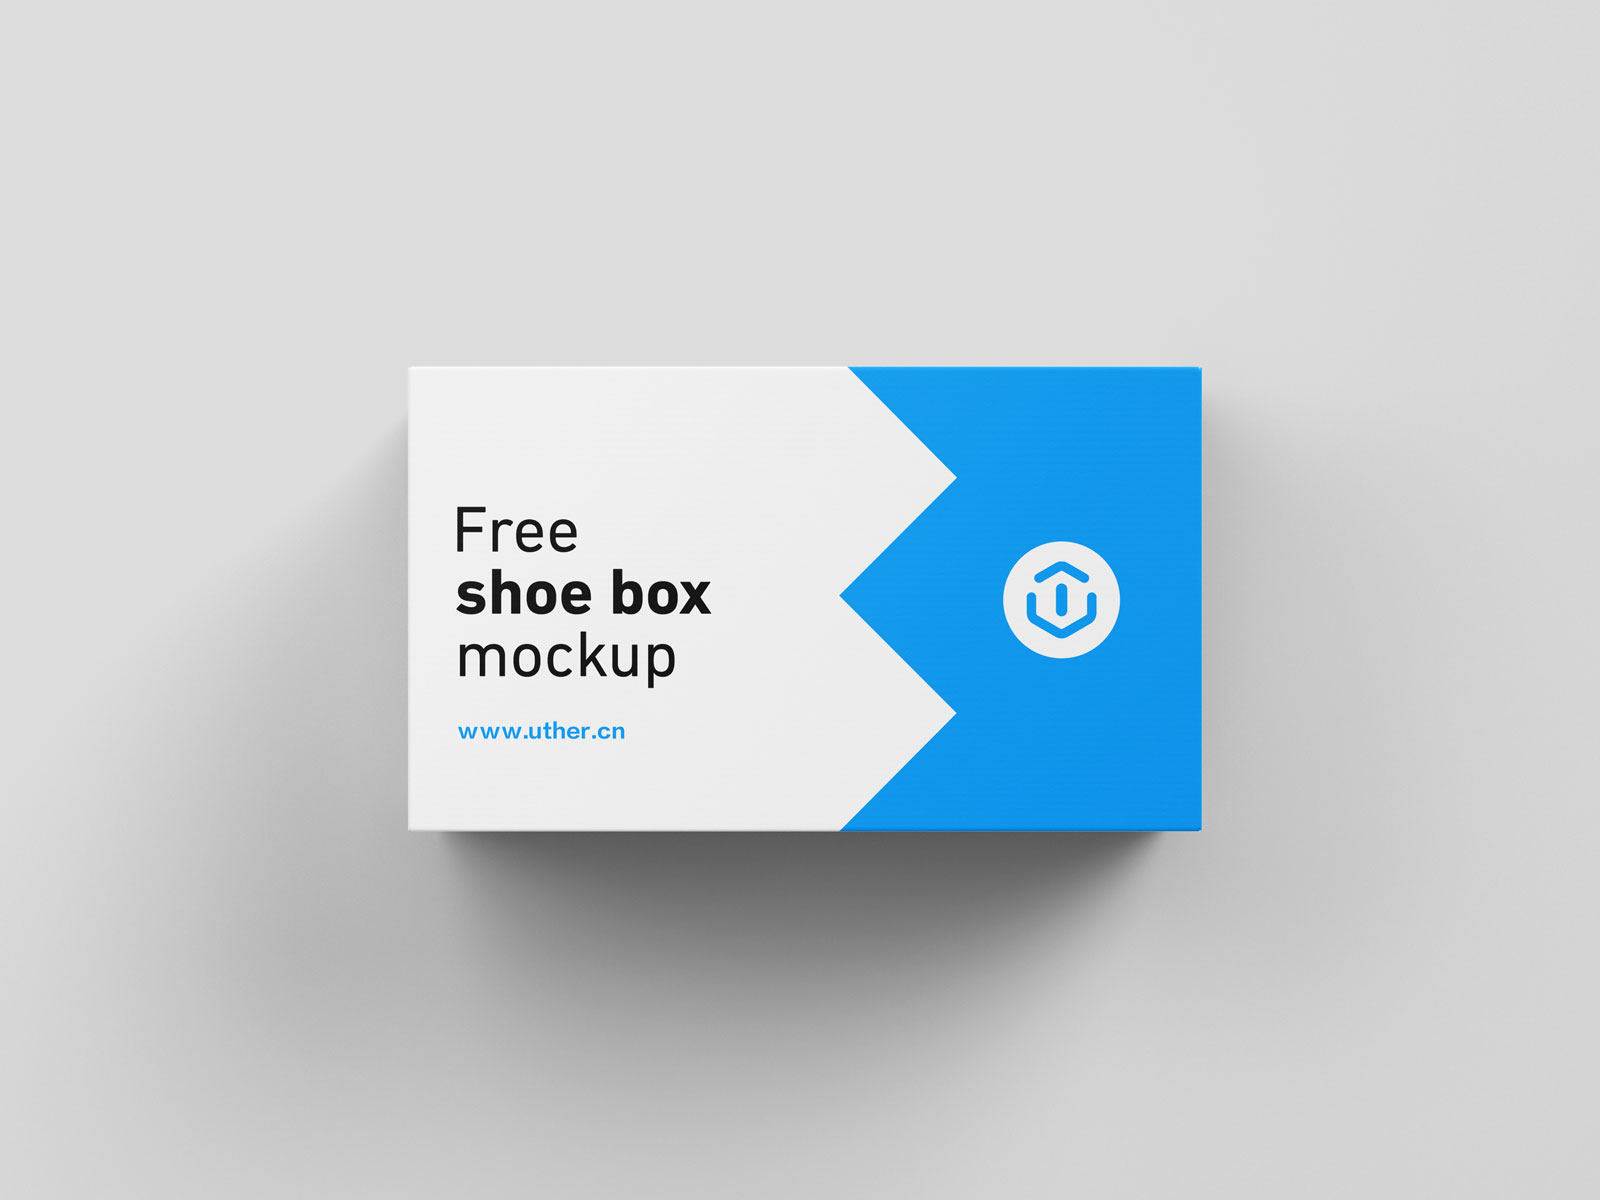 长方形鞋盒设计包装模型PSD样机素材 Shoe box mockup